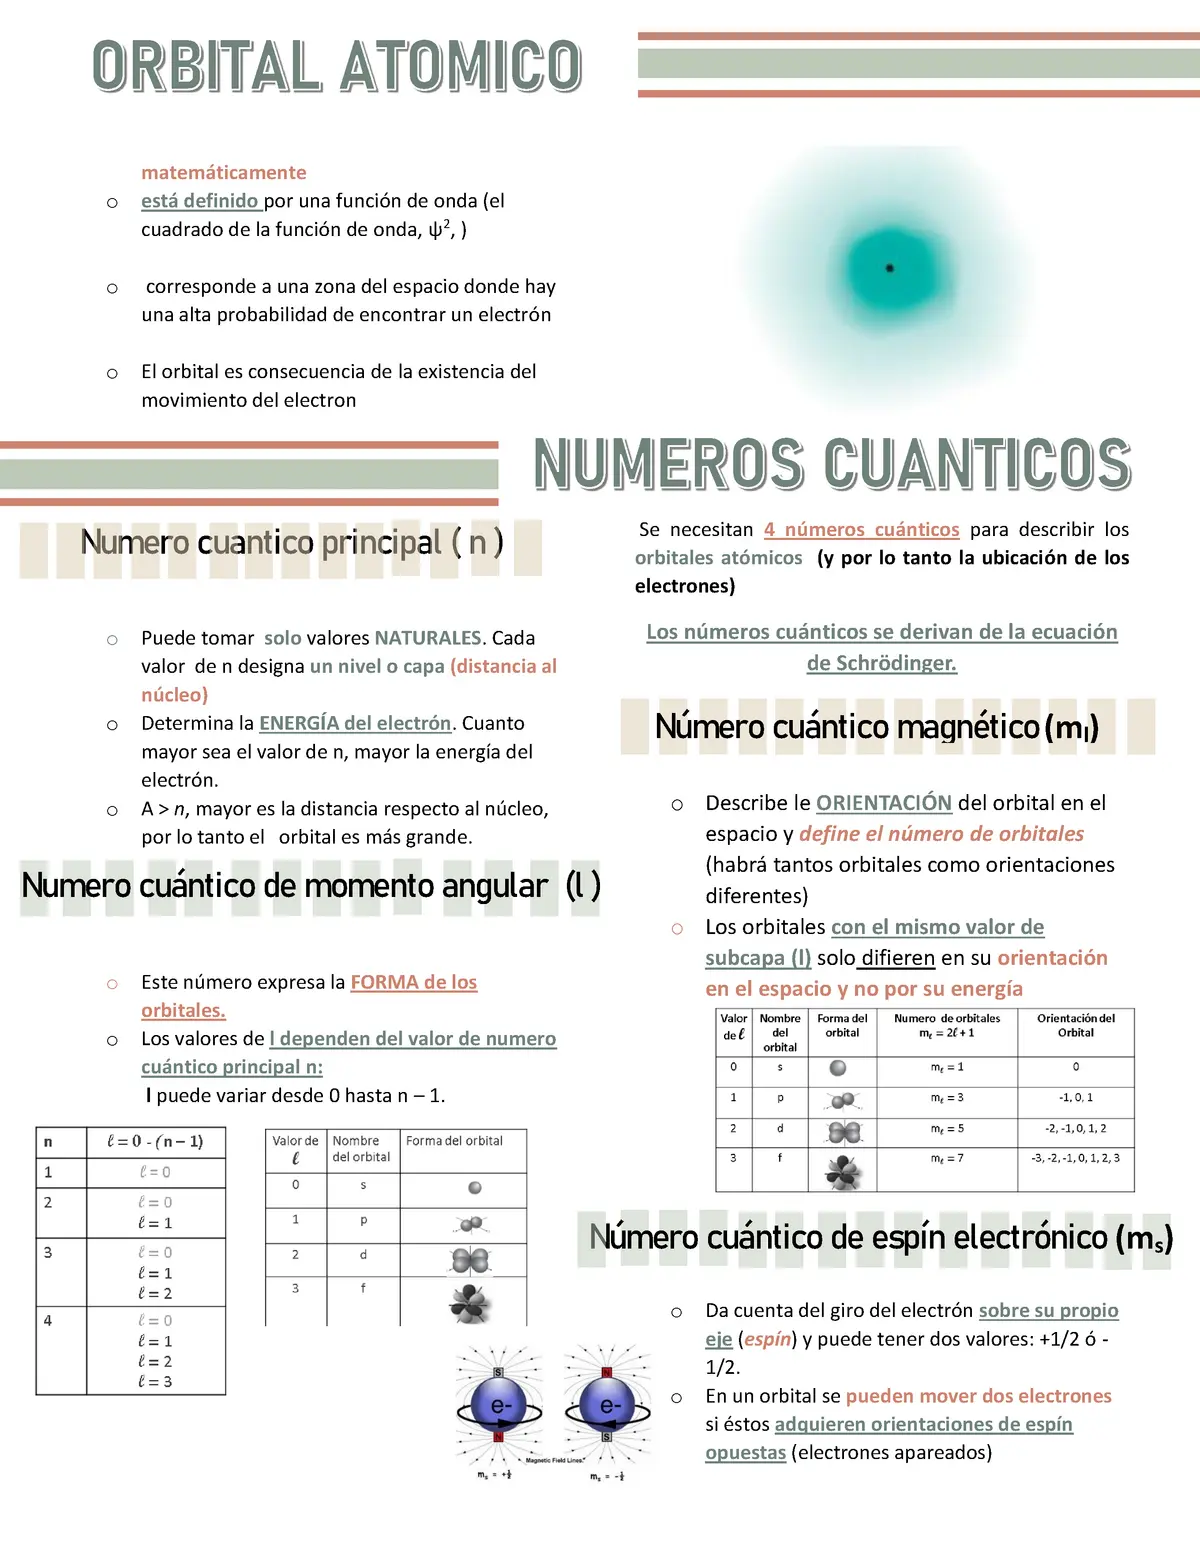 resumen numeros cuanticos - Cómo se calcula el número cuántico